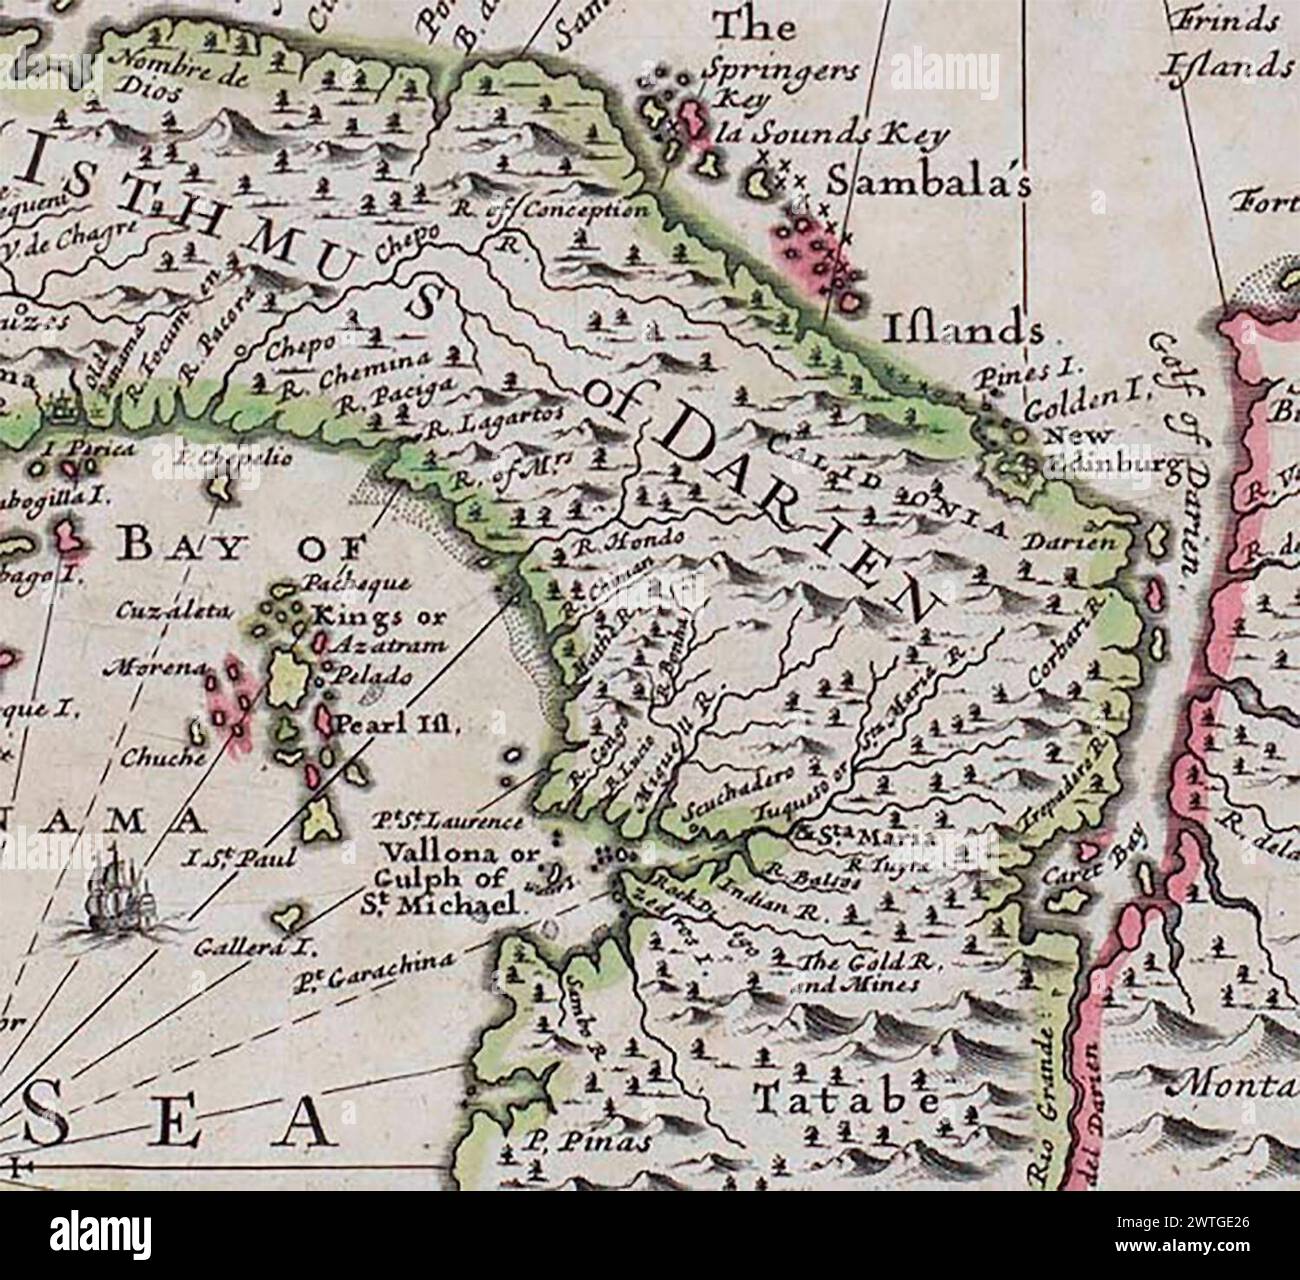 ANON. Une nouvelle carte de l'isthme de Darien en Amérique, la baie de Panama, le Gulph de Vallona ou encore Michael, avec ses îles et pays adjacents 1699 Banque D'Images